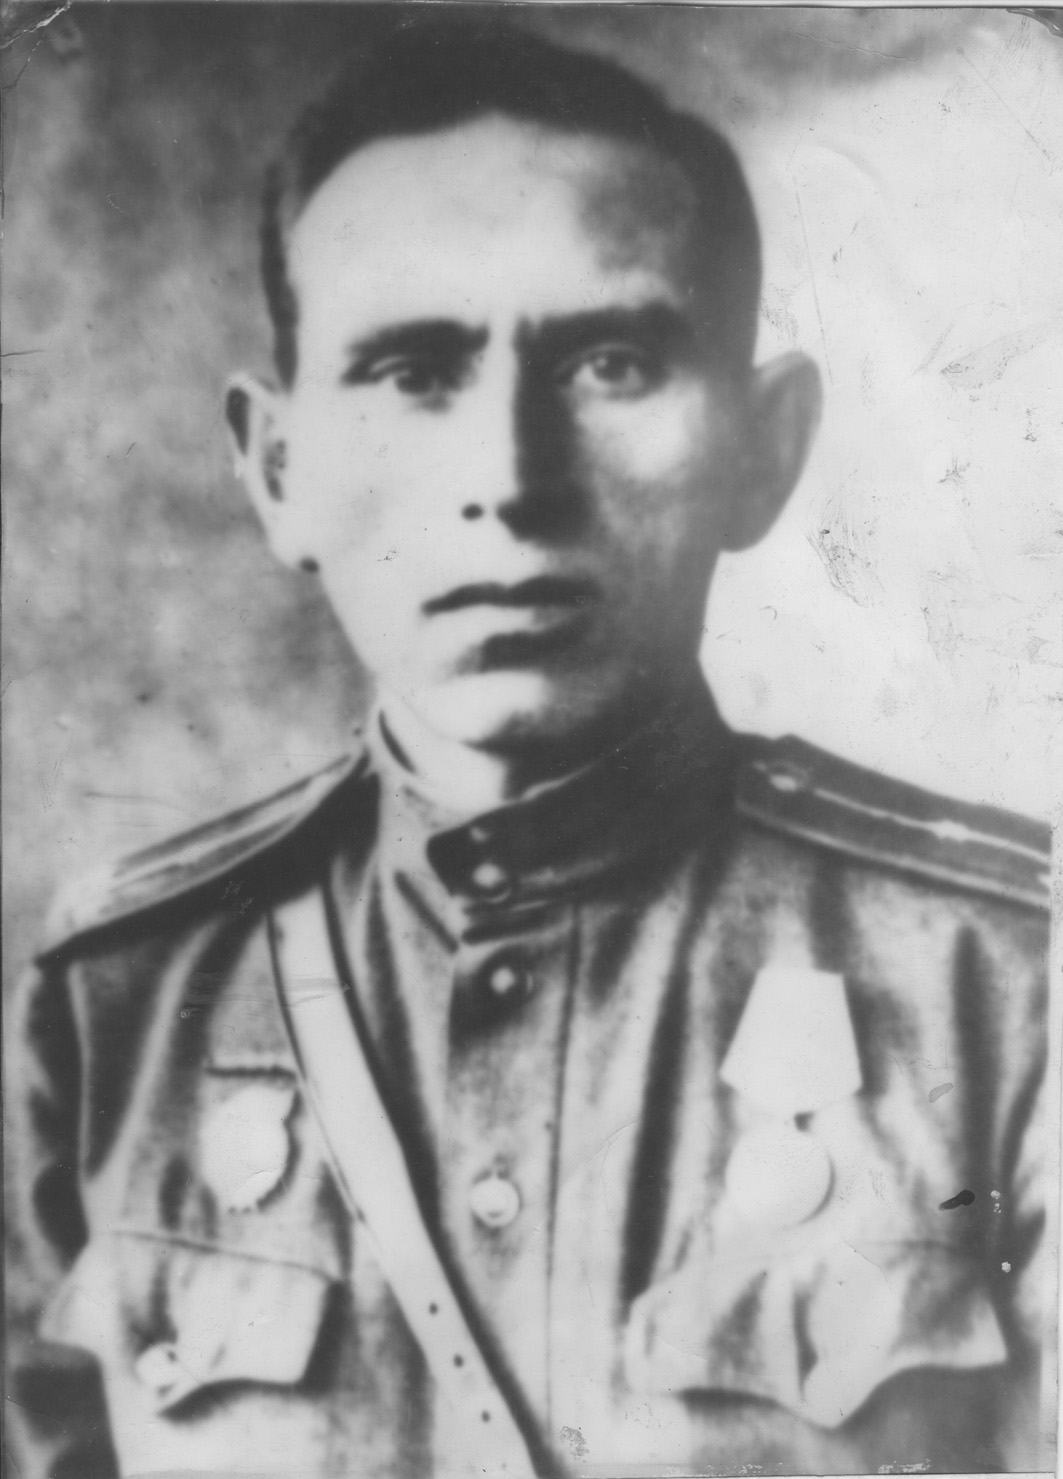 Гвардии старший лейтенант Я.А. Кербель, водрузивший Красное Знамя над Новочеркасском 13 февраля 1943 года